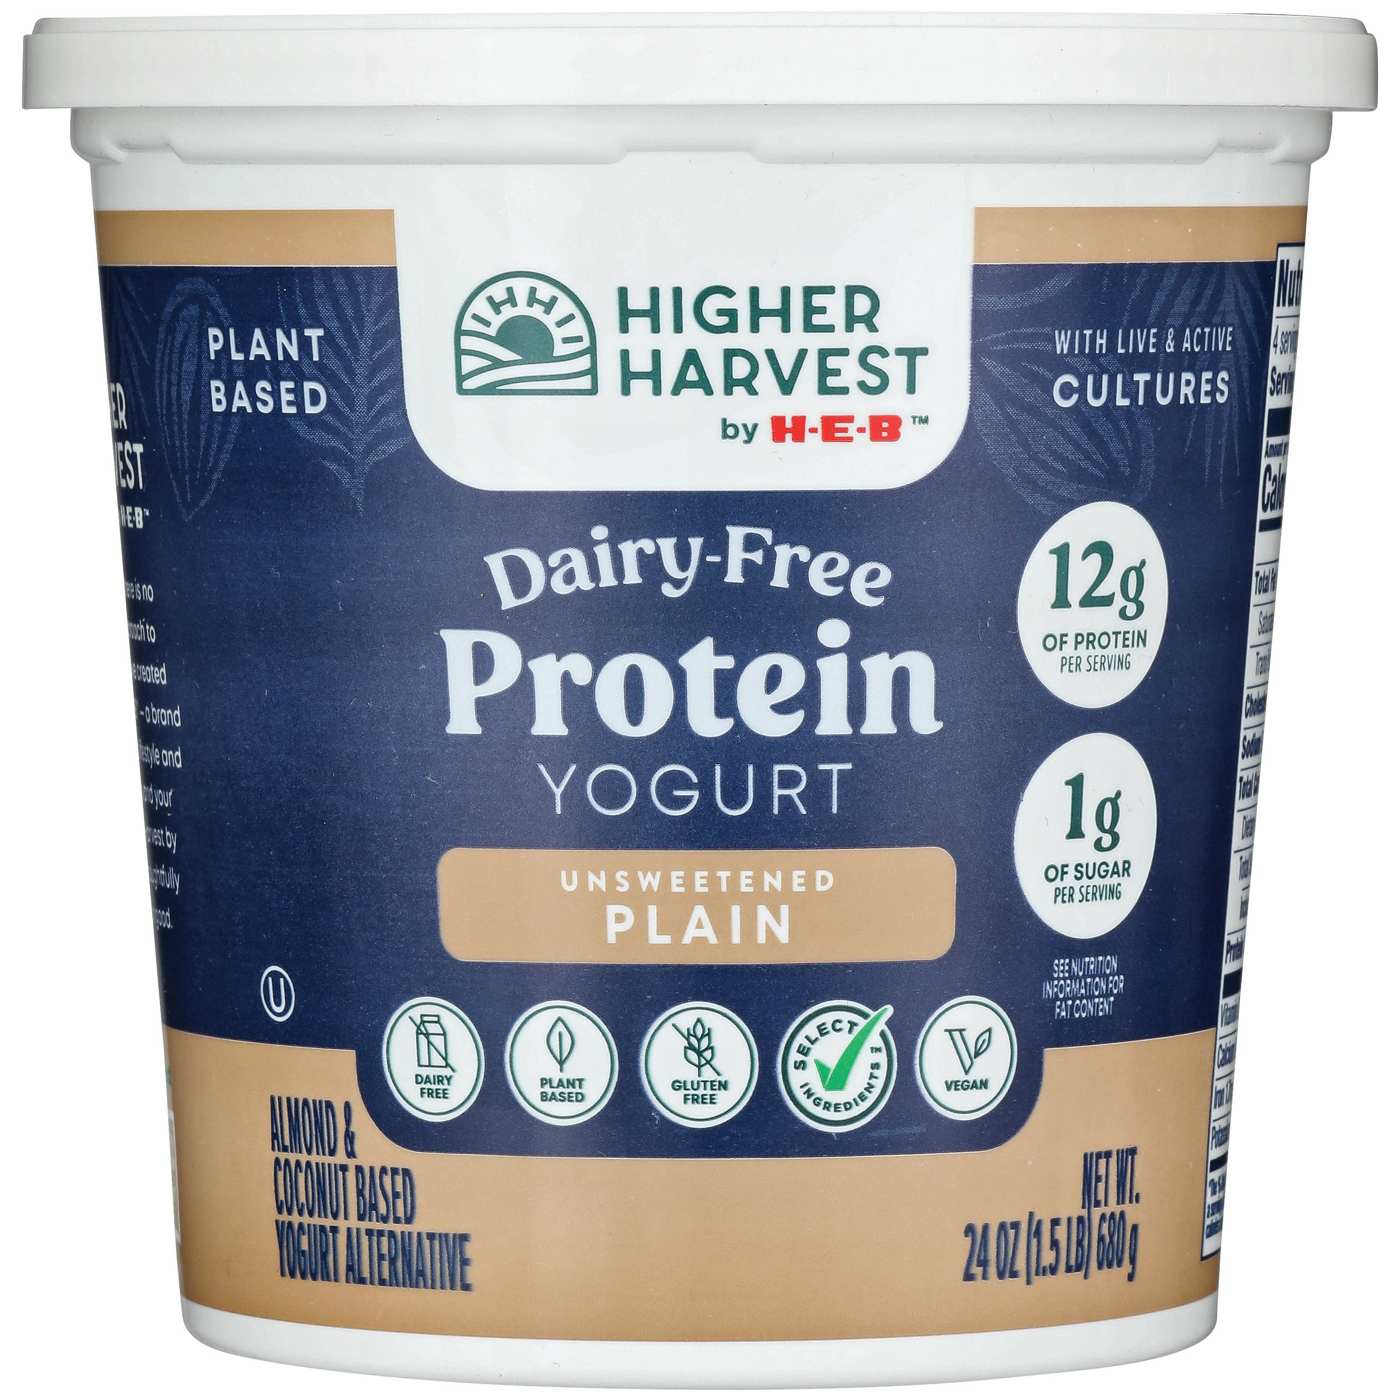 Comprar Yogur Yoplait Natural -500 gr